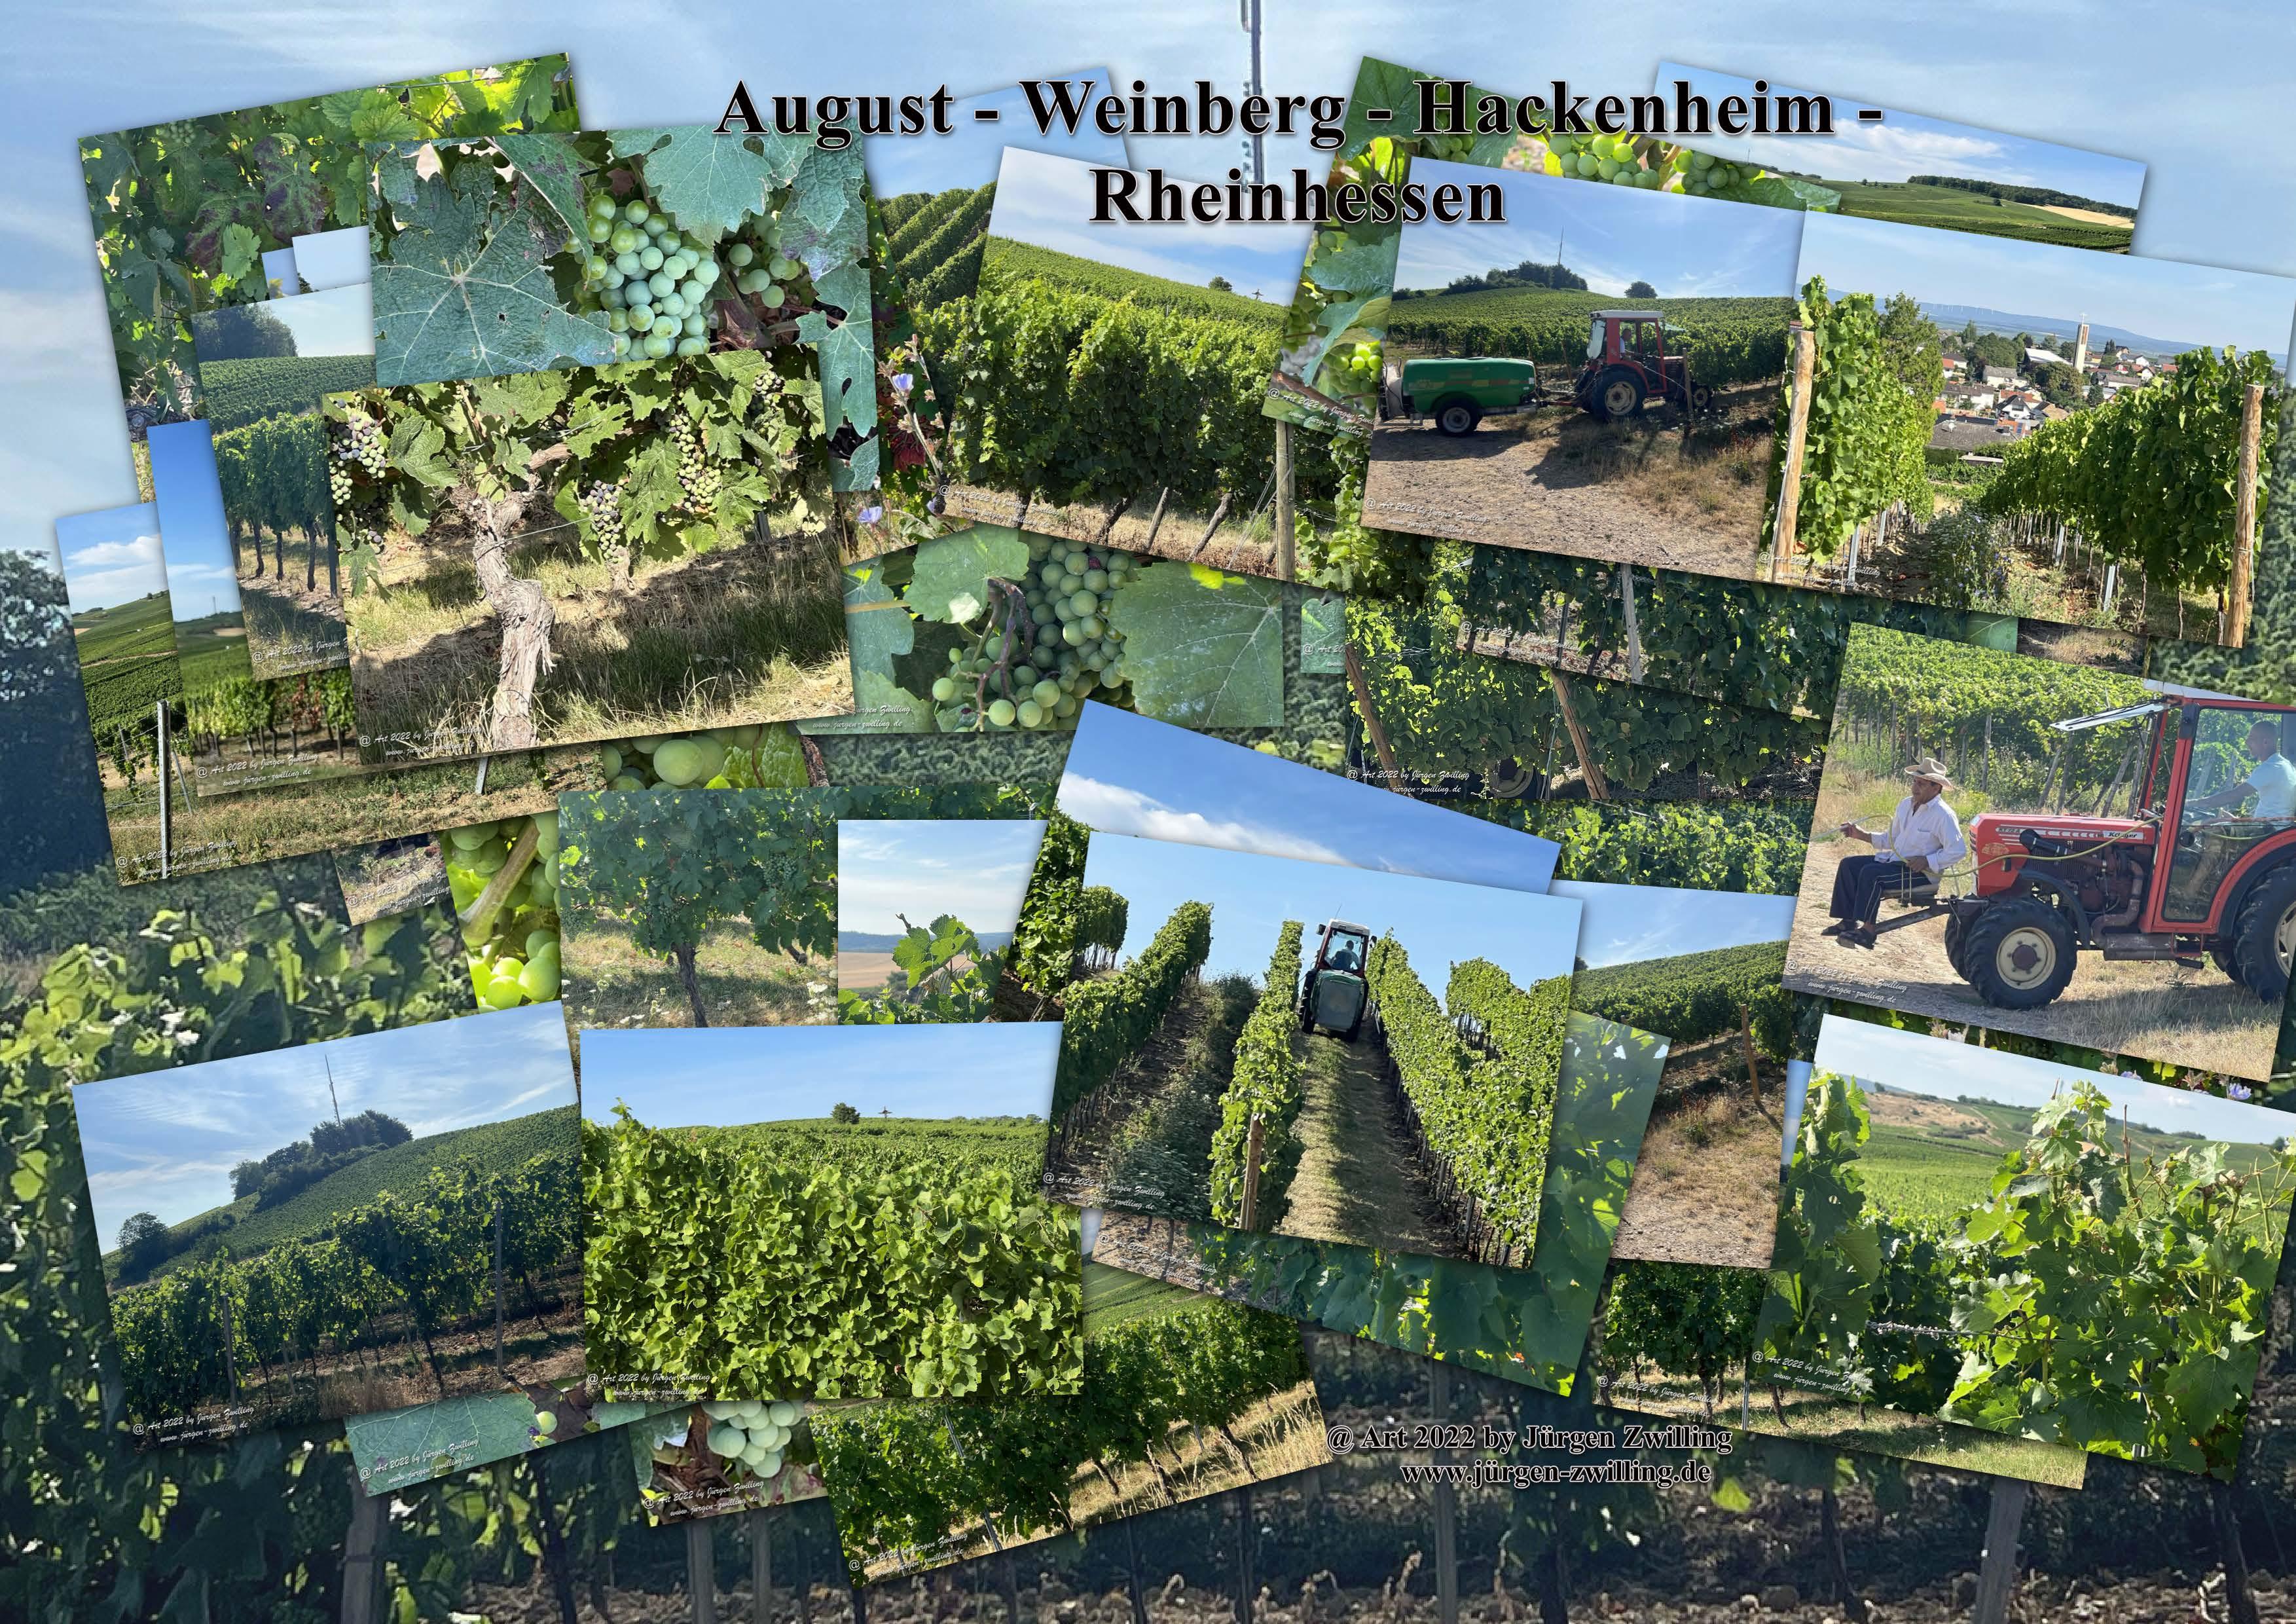 August - Weinberg - Hackenheim - Rheinhessen